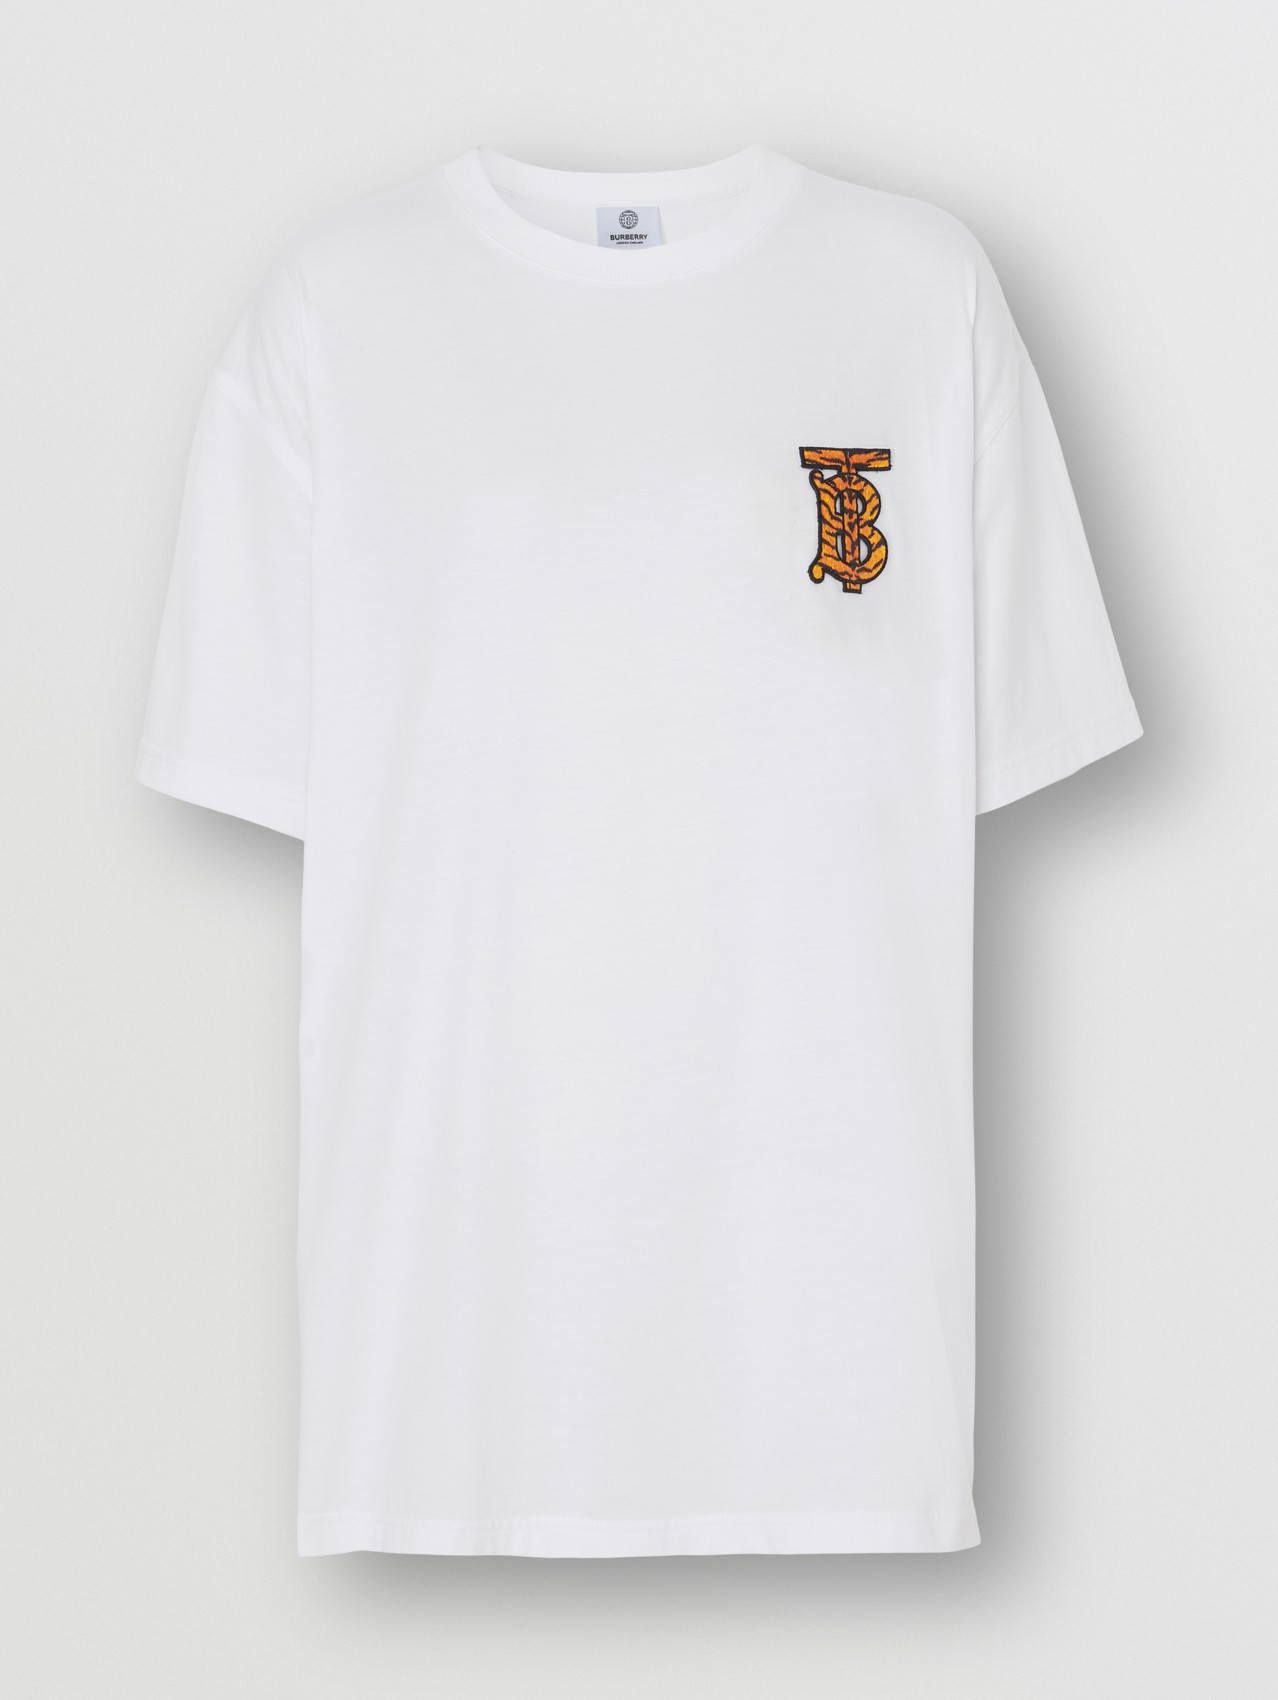 モノグラムモチーフ コットン オーバーサイズTシャツ in ホワイト